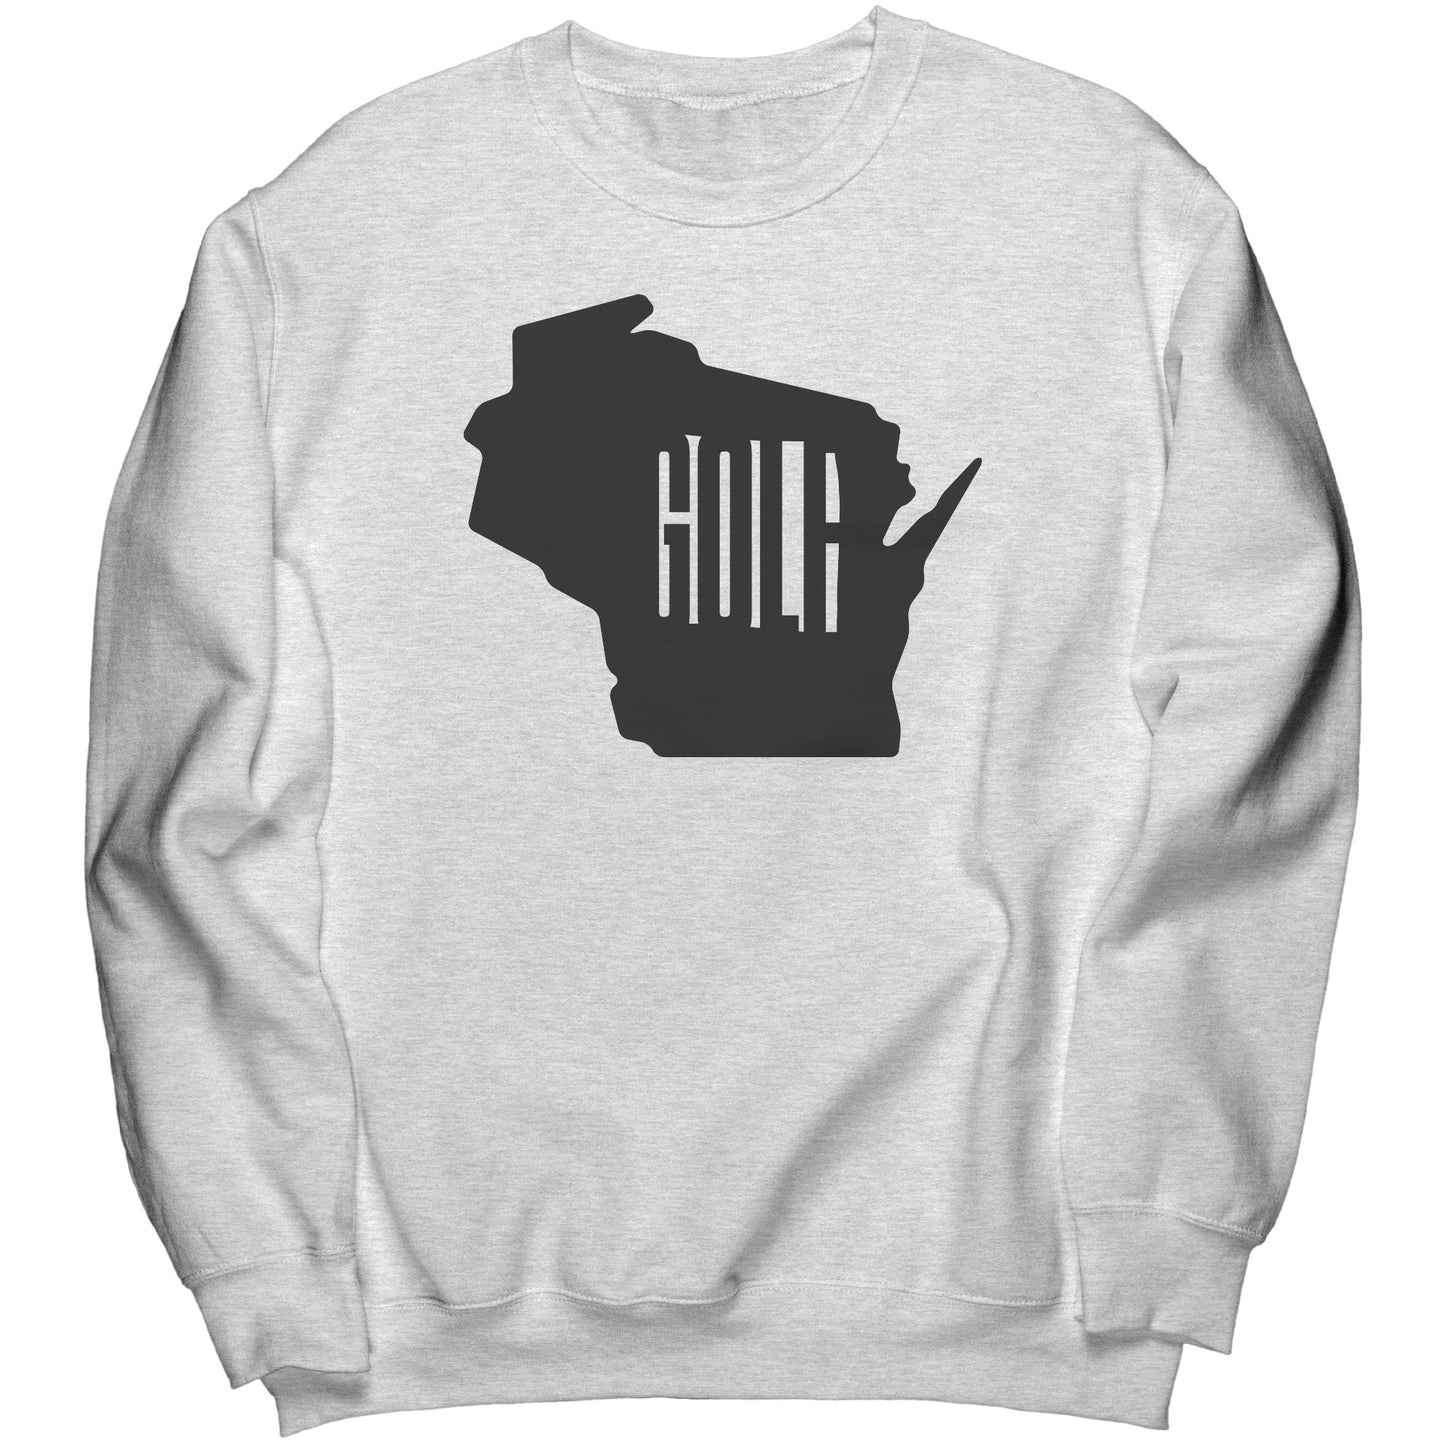 Wisconsin "Golf" Sweatshirt